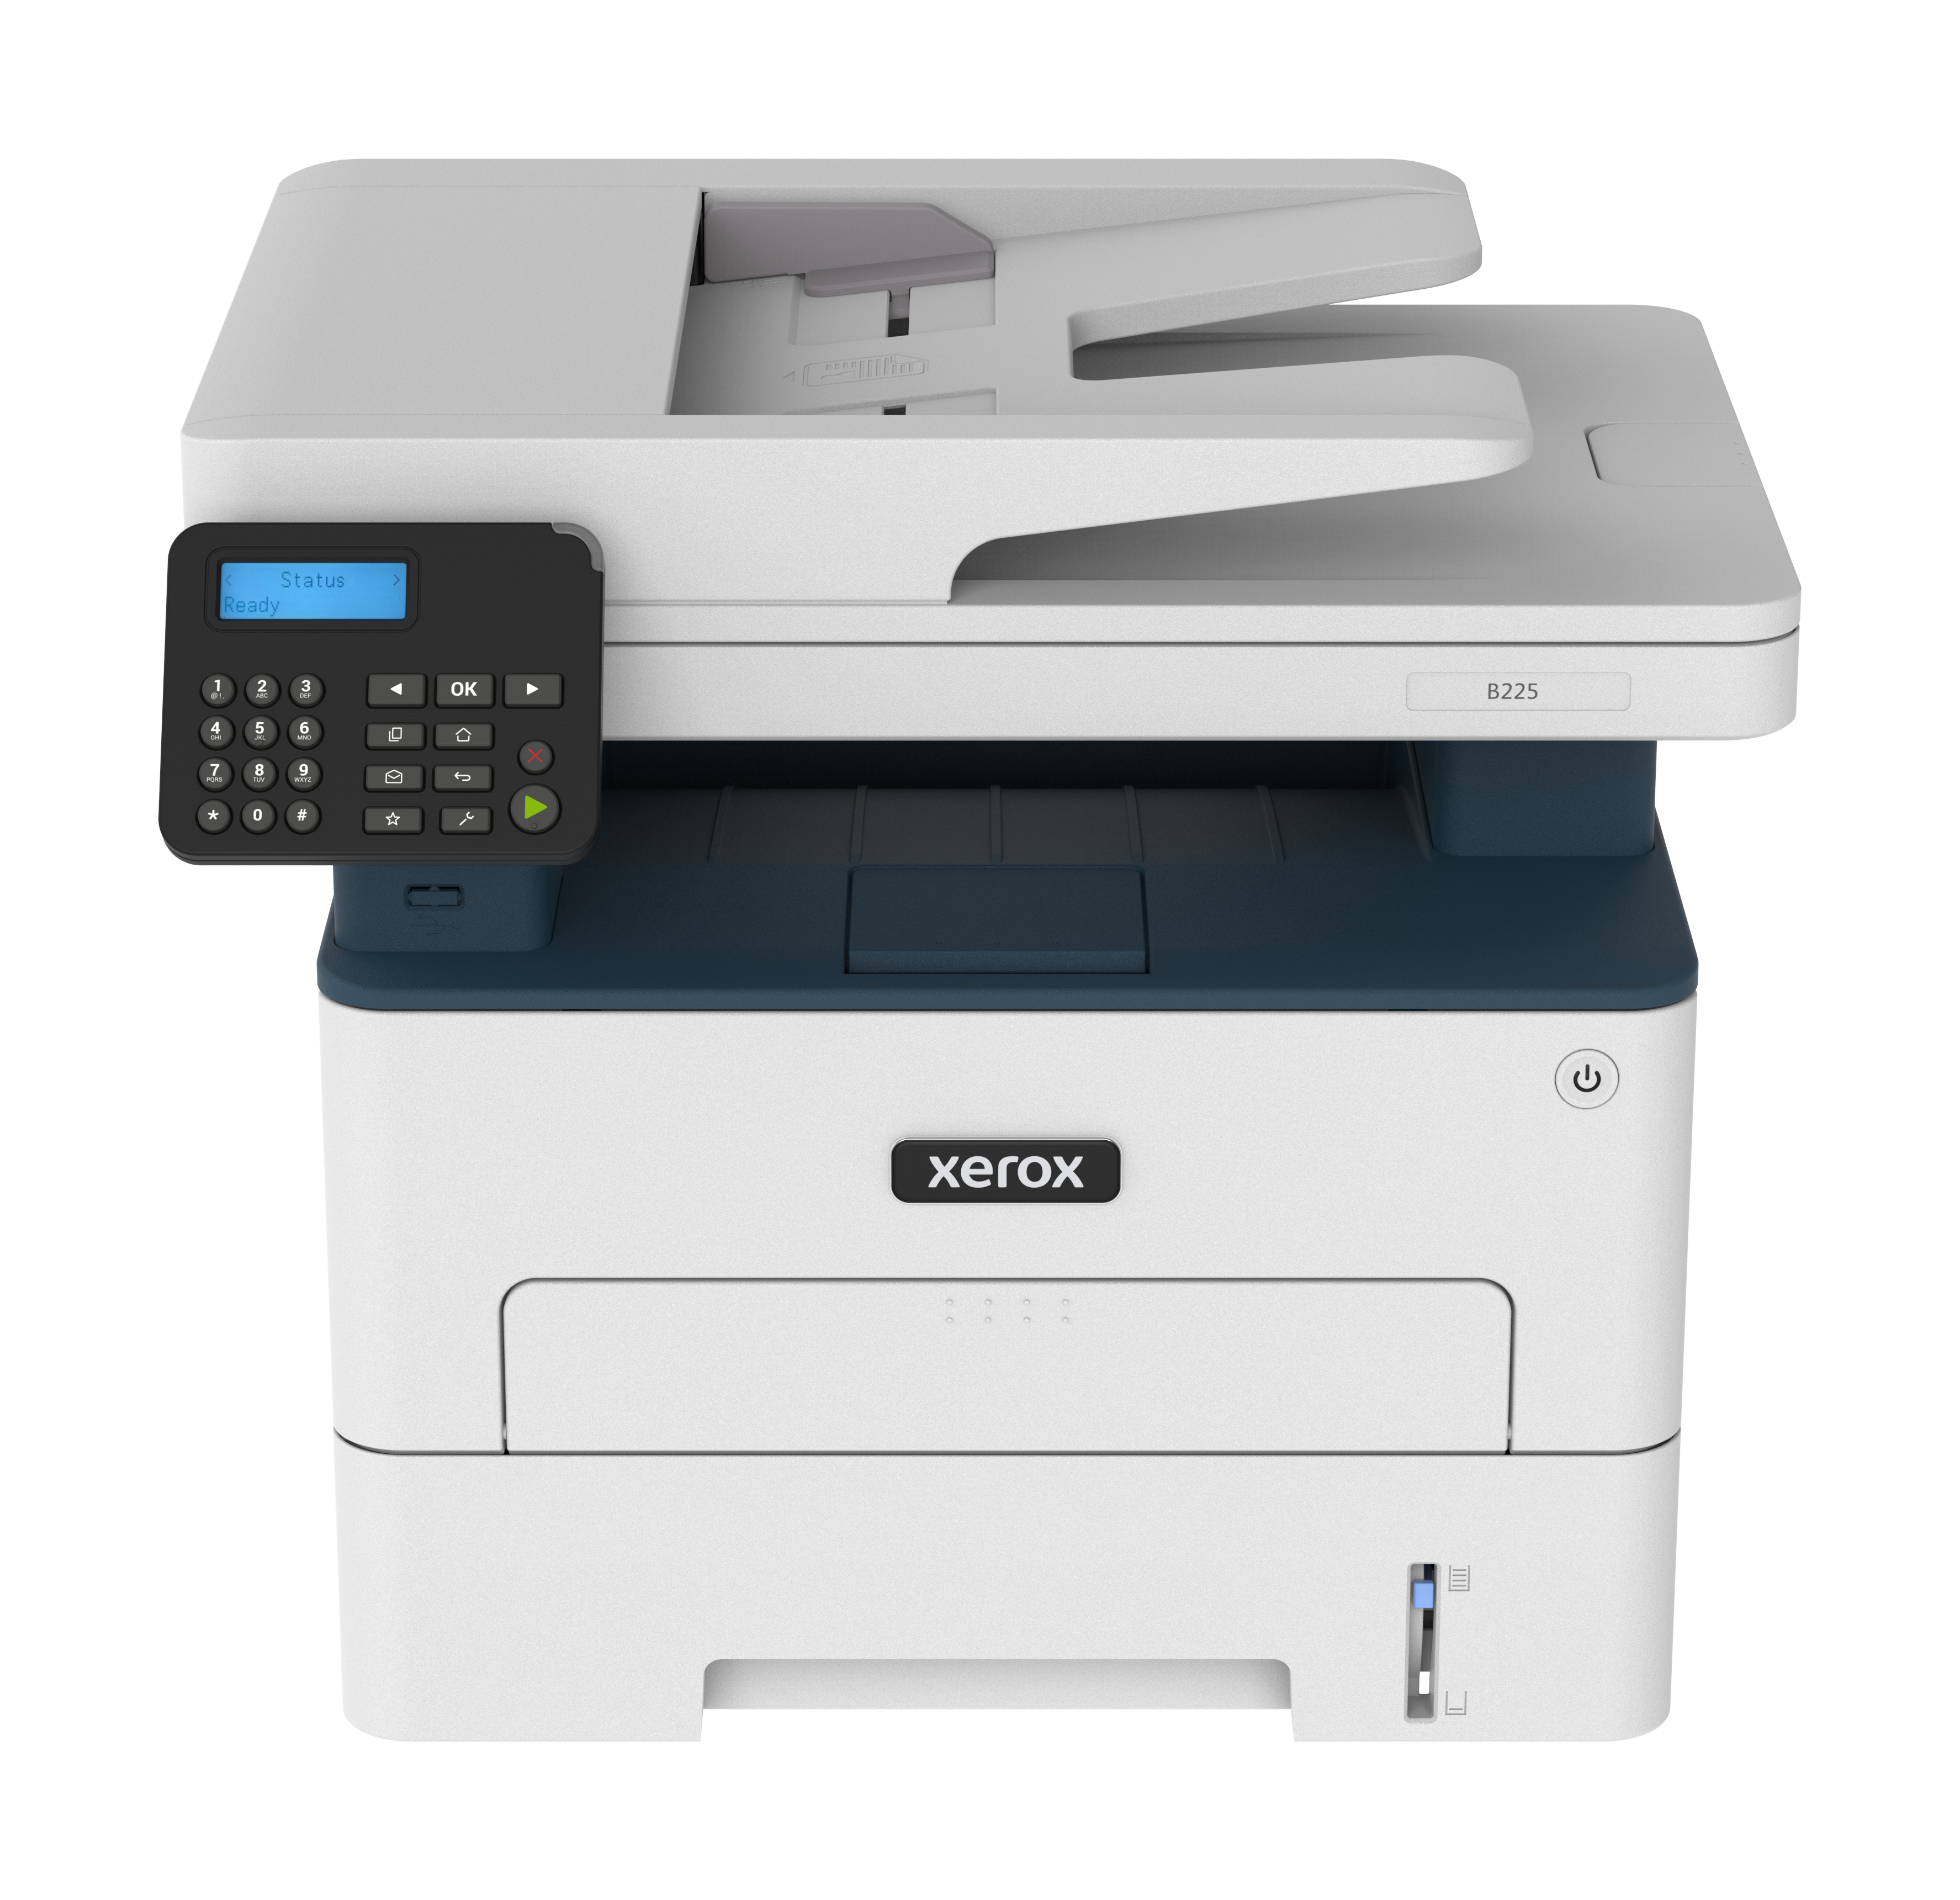 Black-and-White B225 Multifunction Printer - Xerox